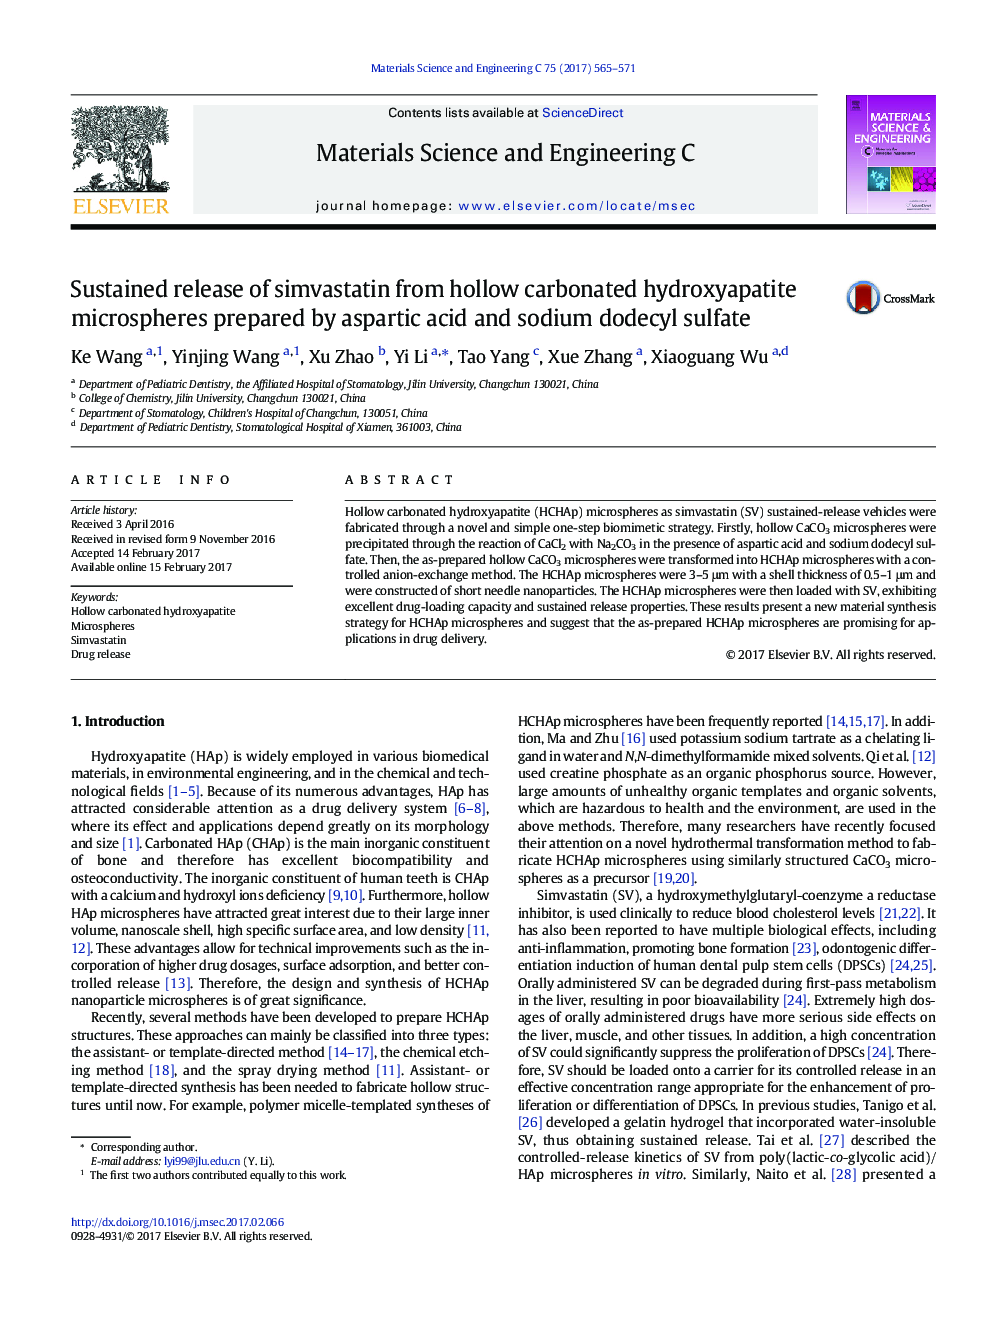 انتشار پایدار از سیمواستاتین از میکروسپارهای هیدروکسی آپاتیت کربنات توخالی تهیه شده توسط اسیدآرتیکیک و سدیم داودسیل سولفات 